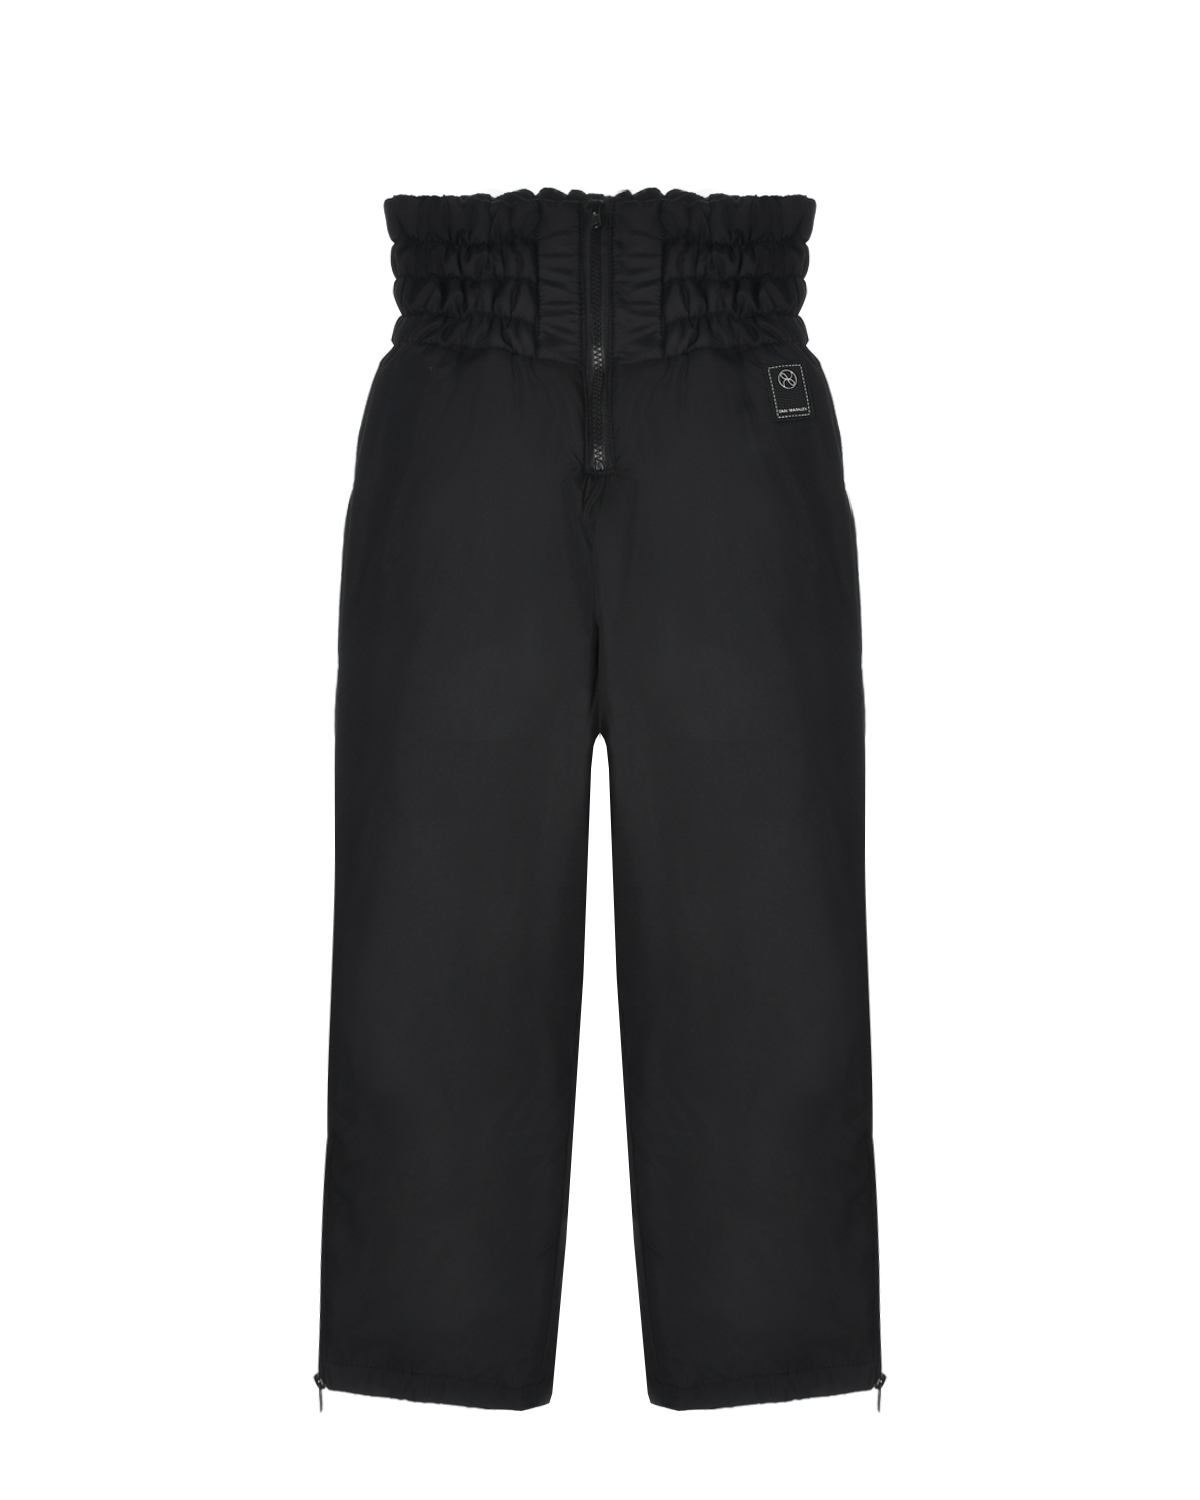 Утпеленные брюки с широким поясом Dan Maralex детские, размер 140, цвет черный - фото 1